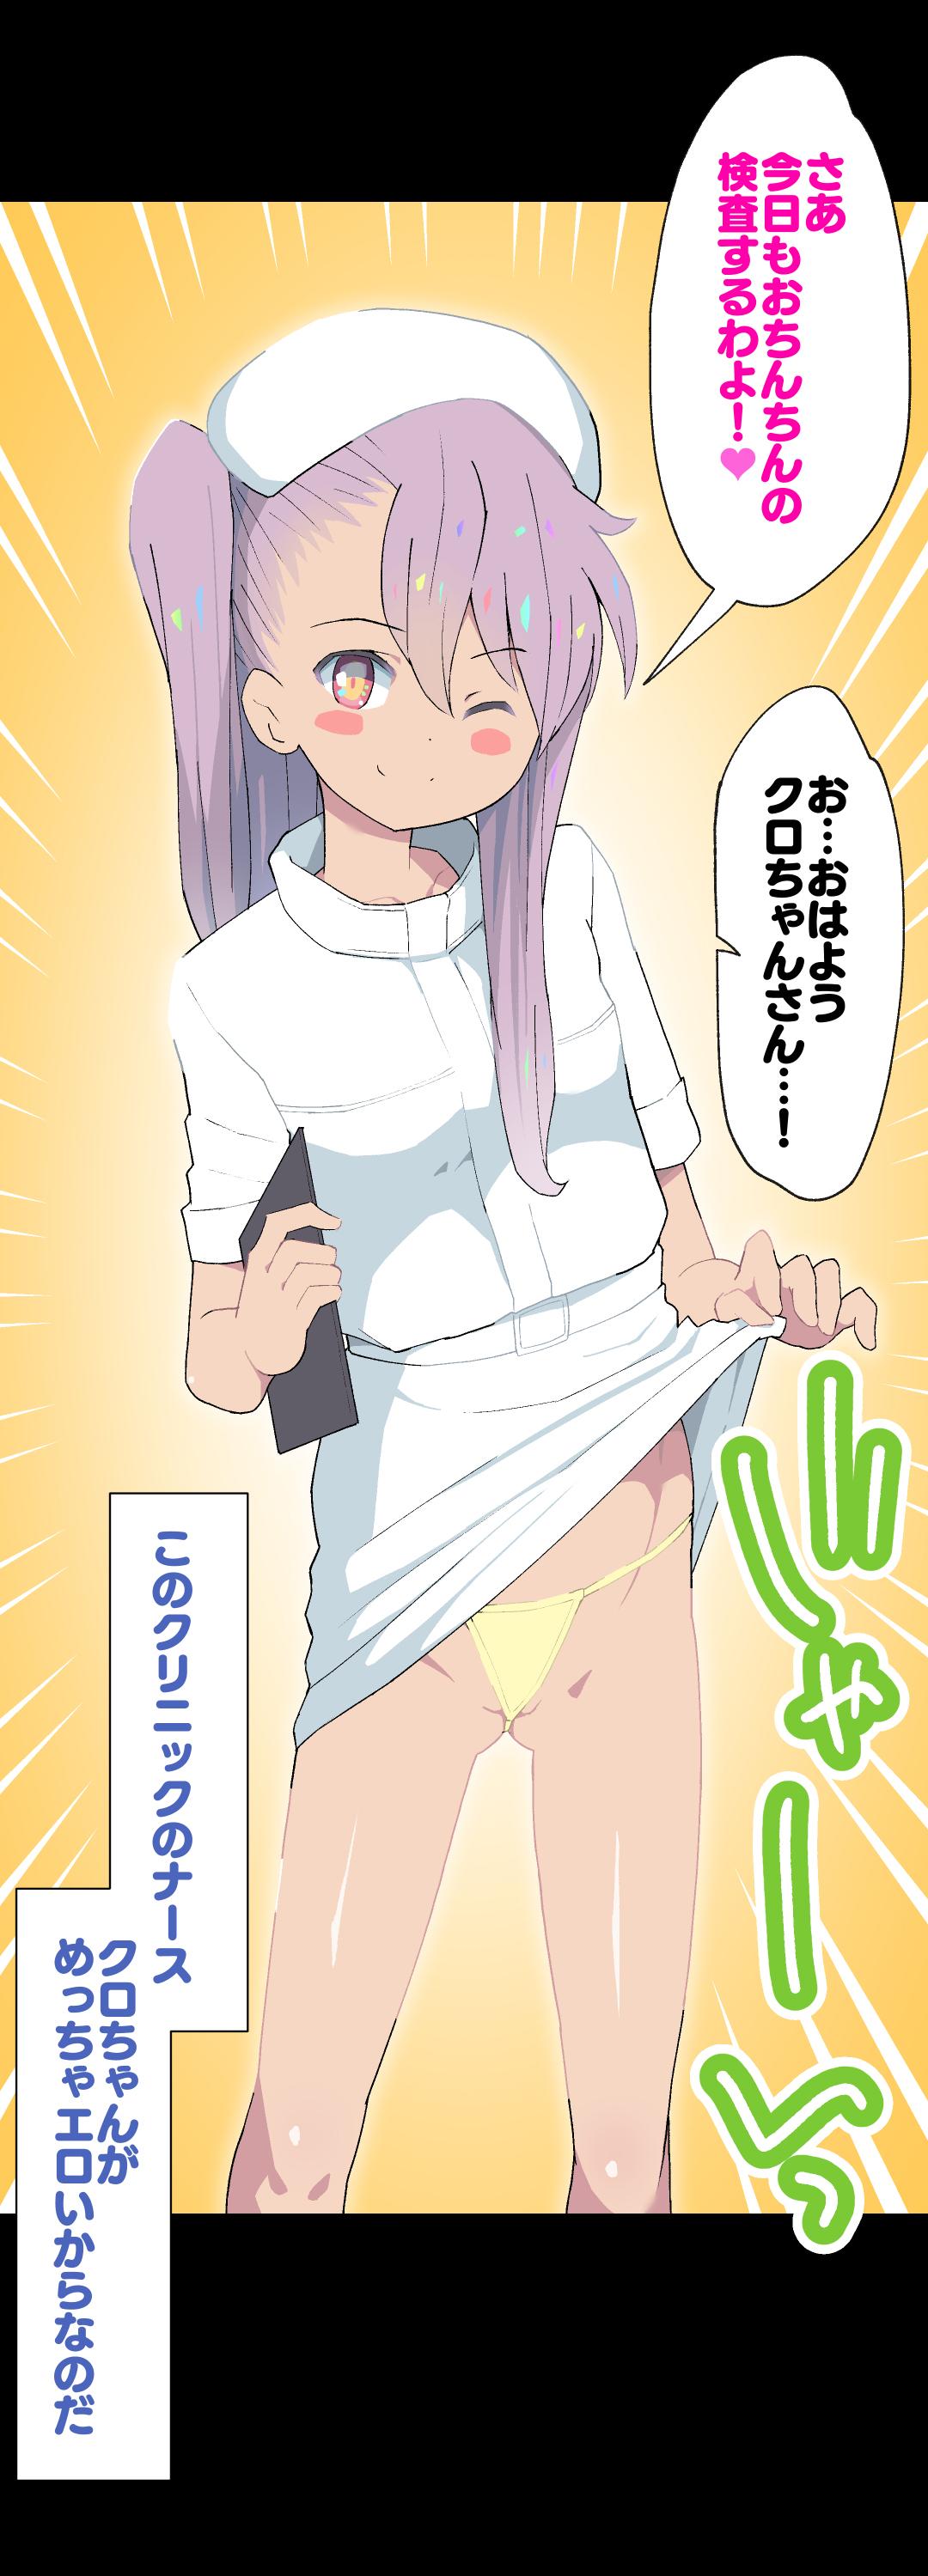 Kuro-chan Nurse no Ochinchin Kenshin Vol. 01 4